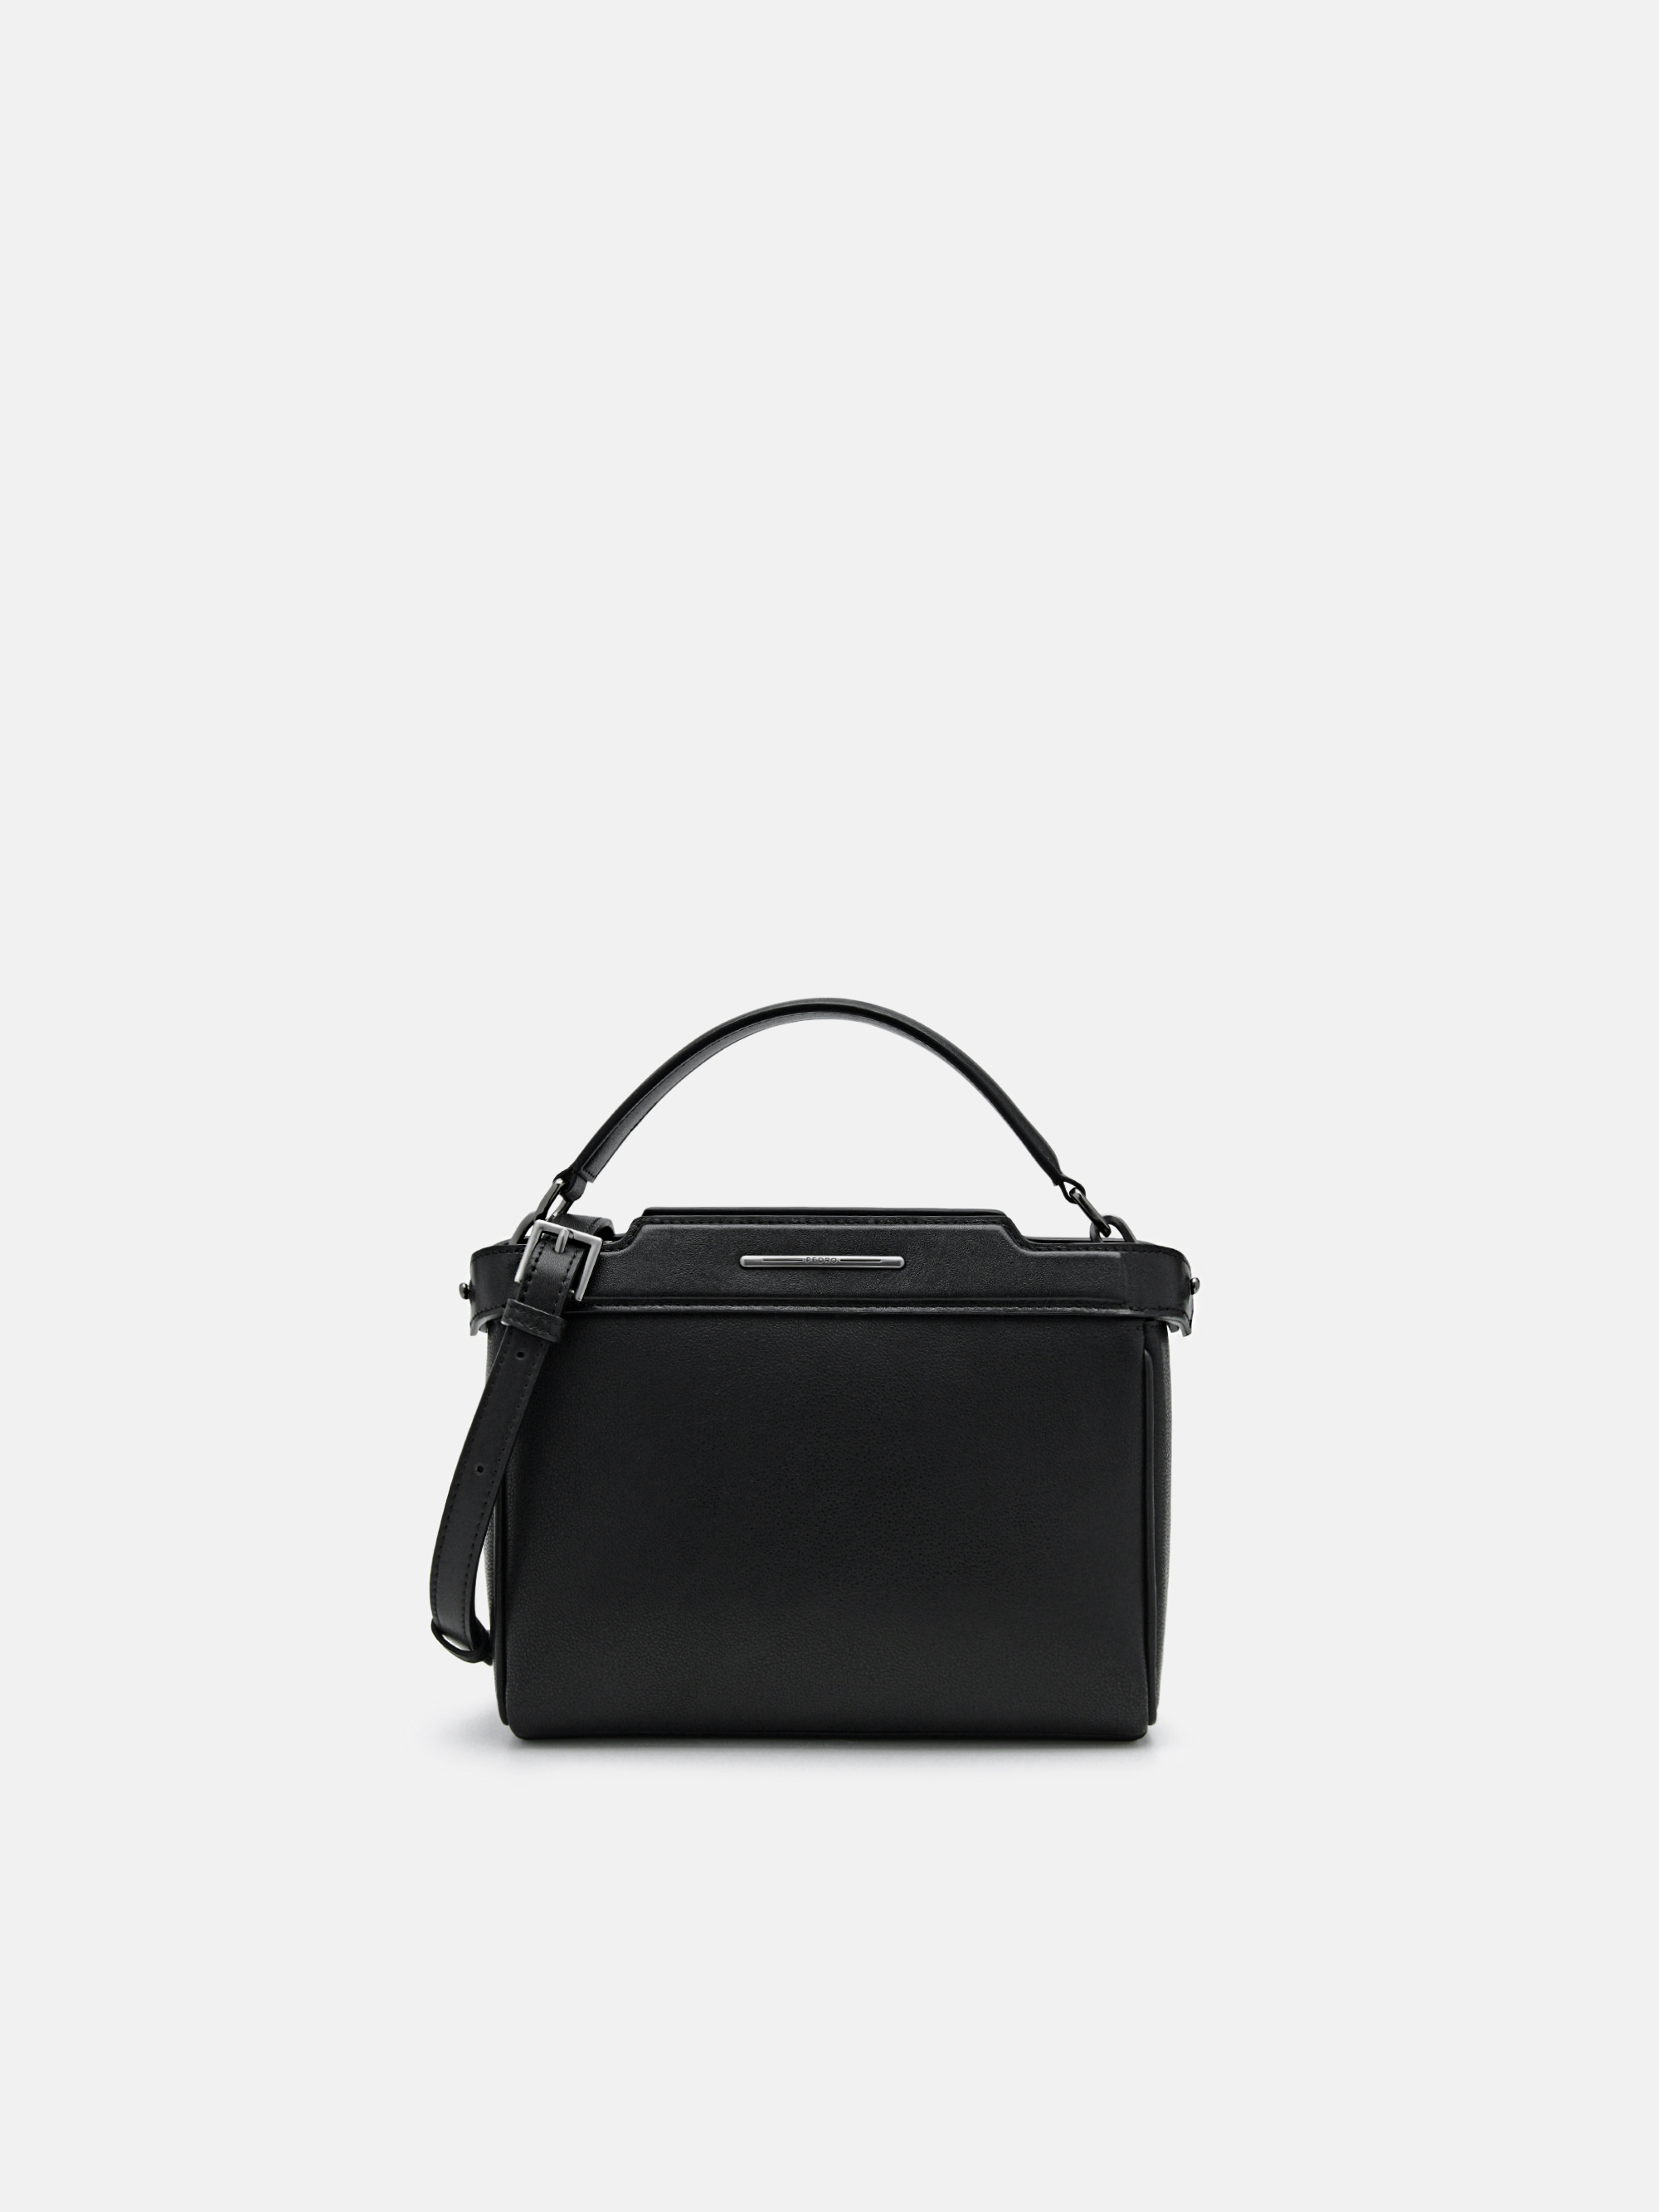 Black Leather Structured Sling Bag - PEDRO SG